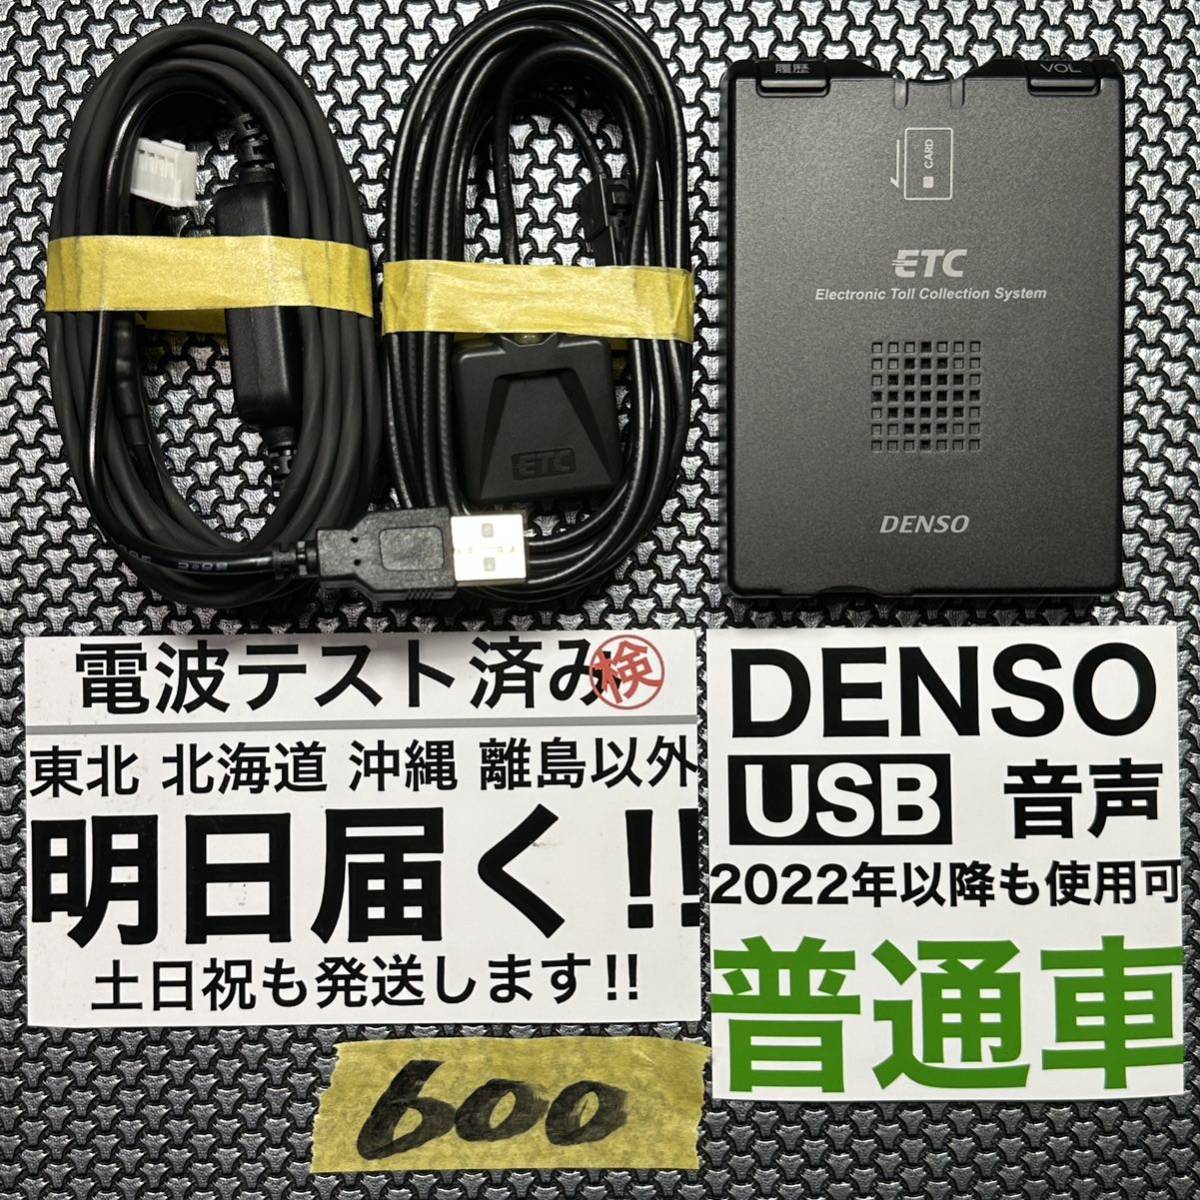 入荷中 174 追跡付 即発送 普通車 USB ETC 車載器 電波テスト済